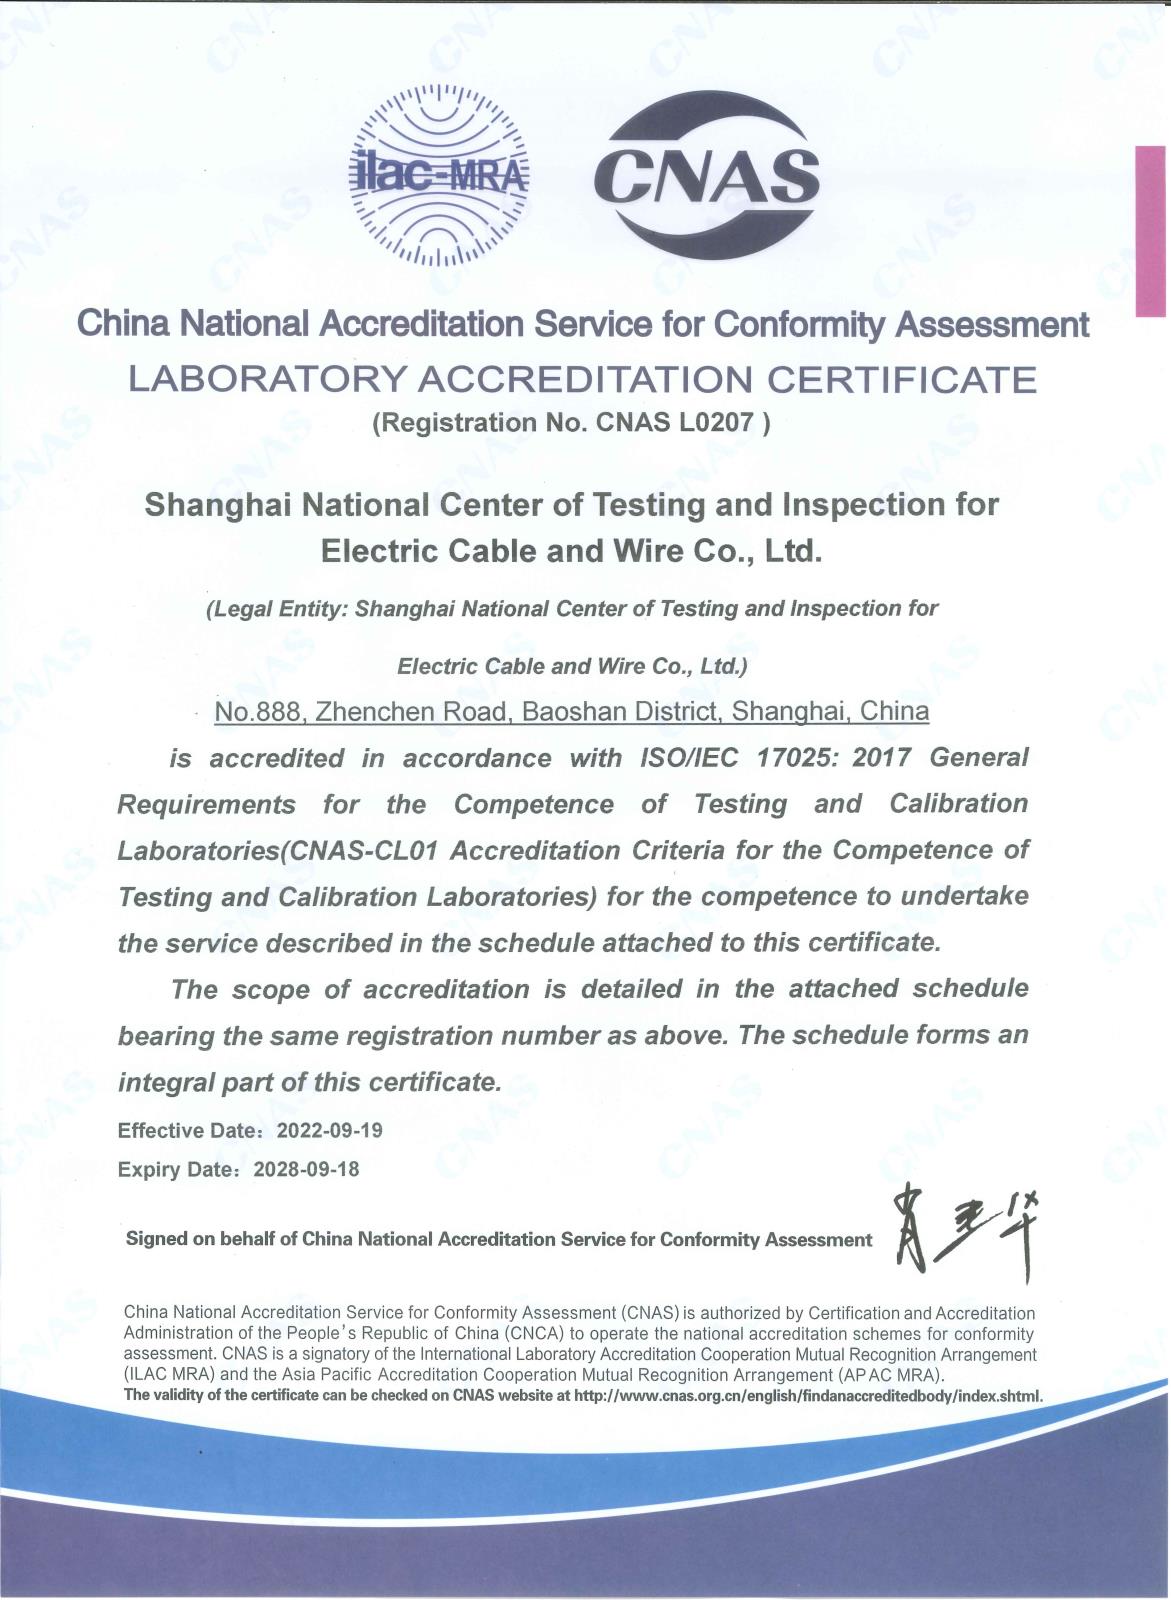 上海國纜檢測股份有限公司實驗室認可證書-英文版